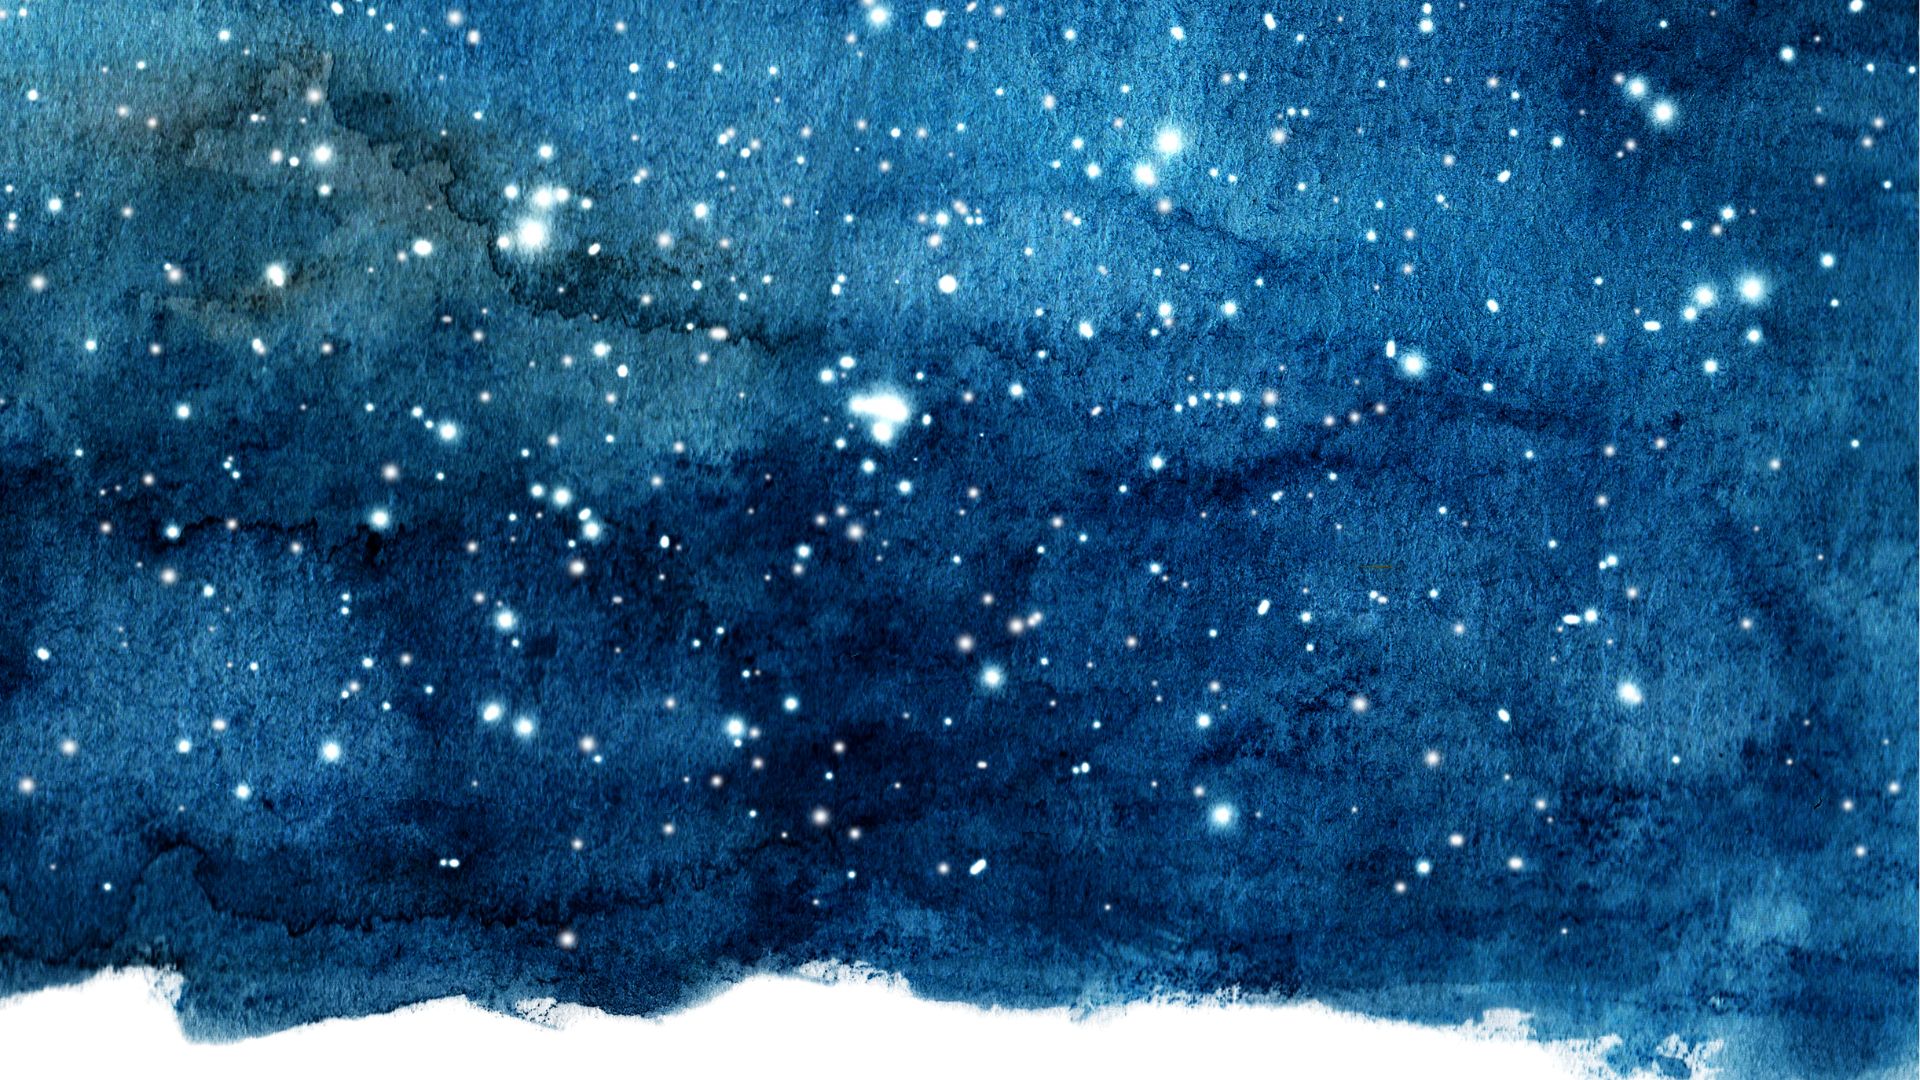 4k night sky wallpaper for pc (4)